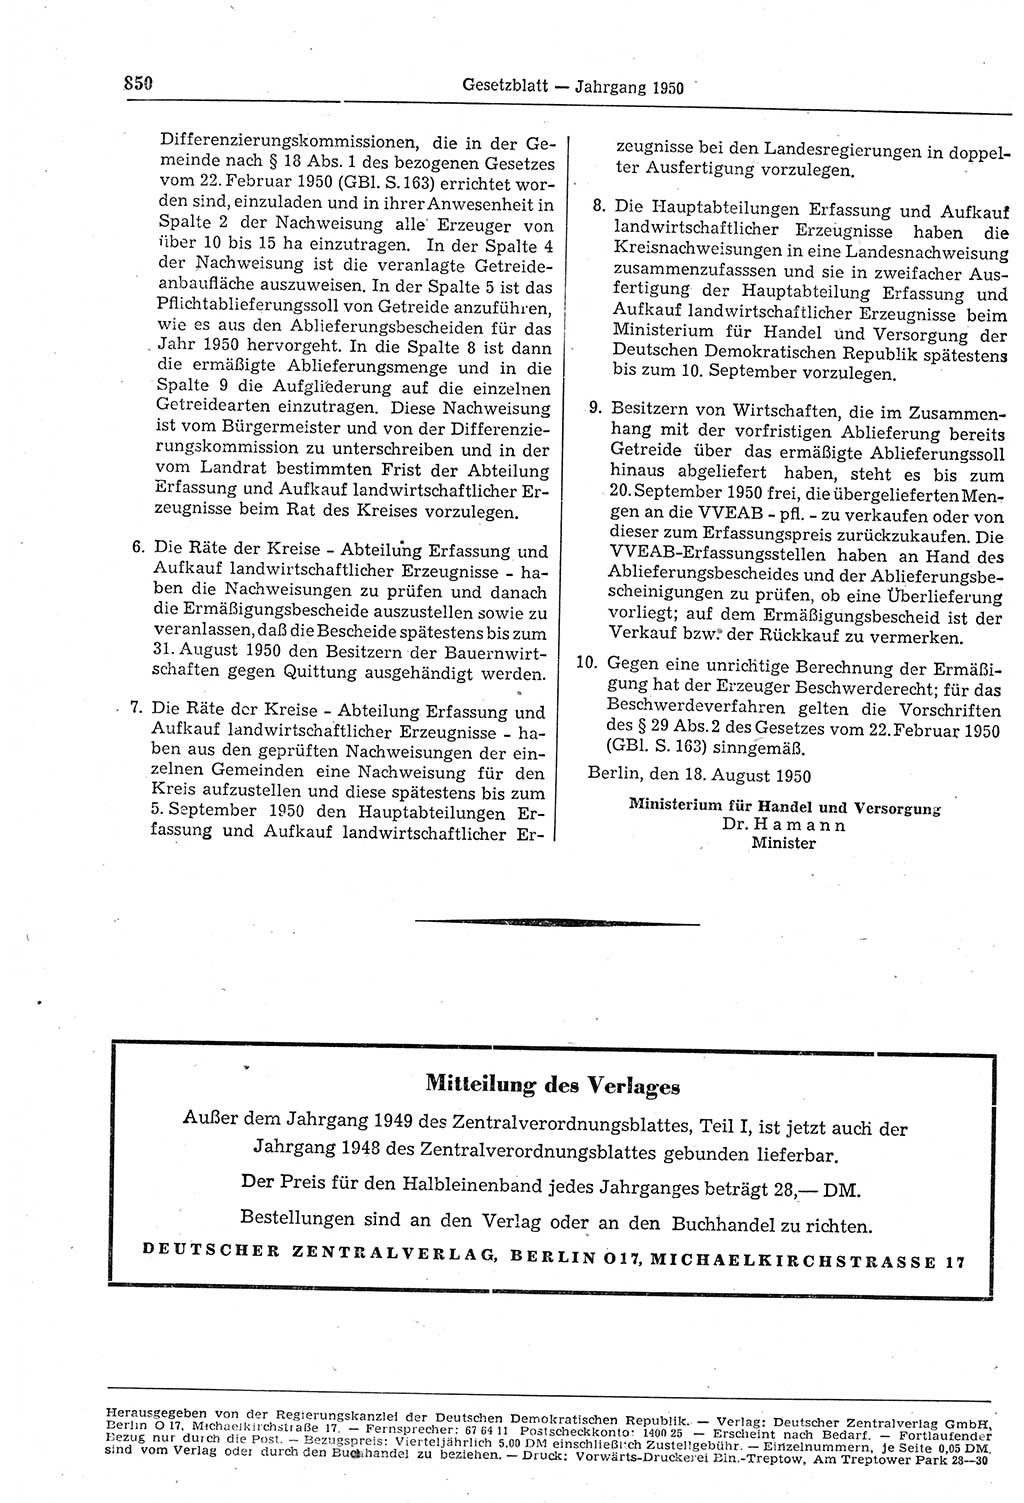 Gesetzblatt (GBl.) der Deutschen Demokratischen Republik (DDR) 1950, Seite 850 (GBl. DDR 1950, S. 850)